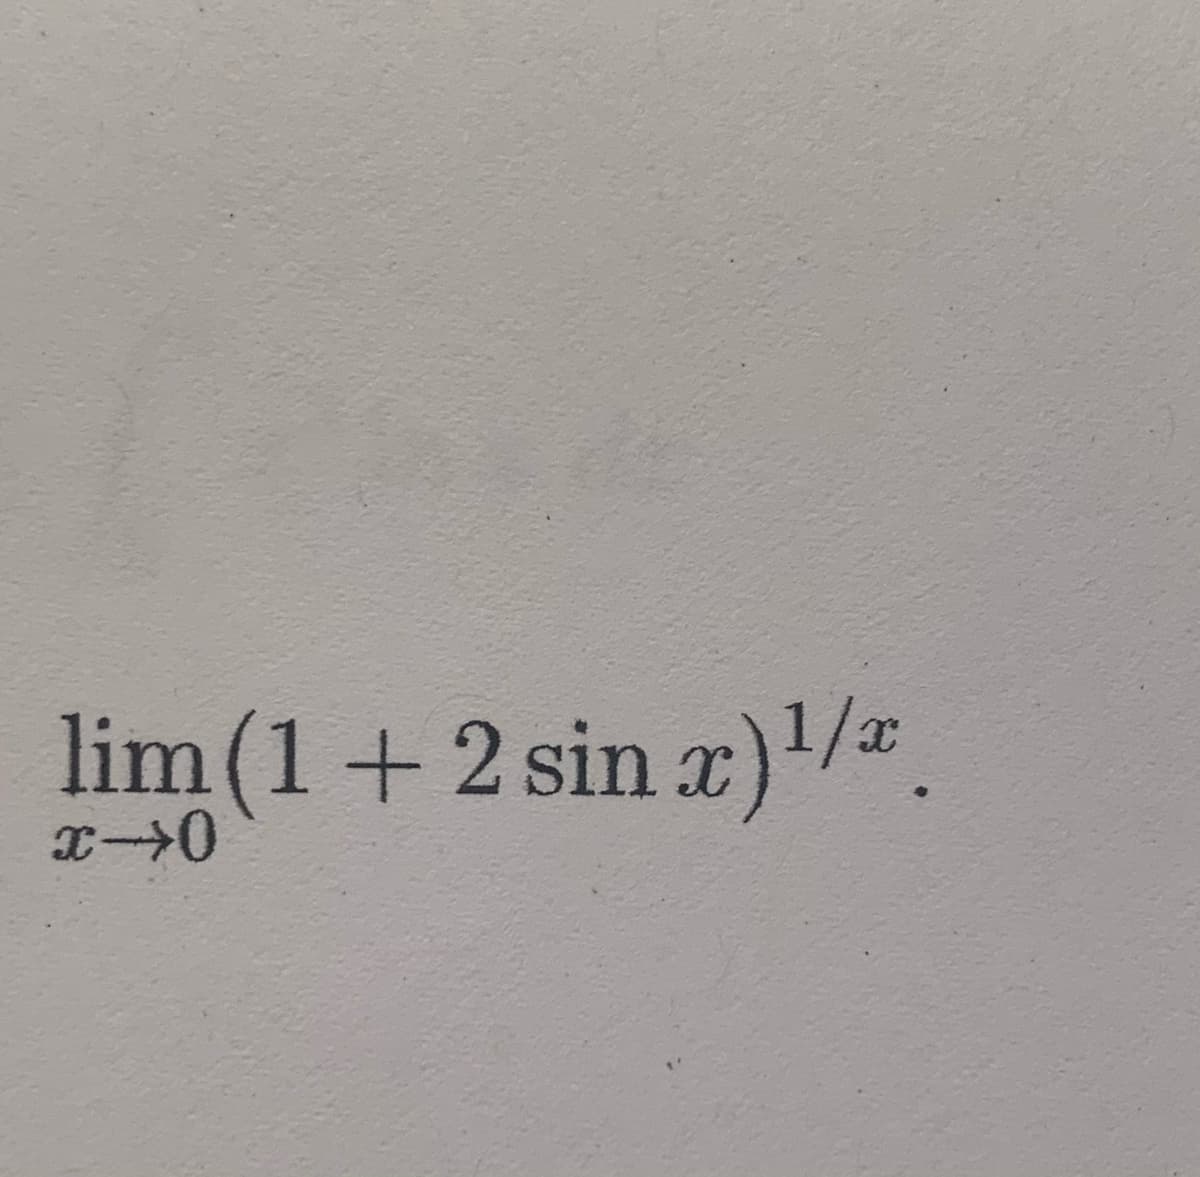 lim (1+2 sin )/.
